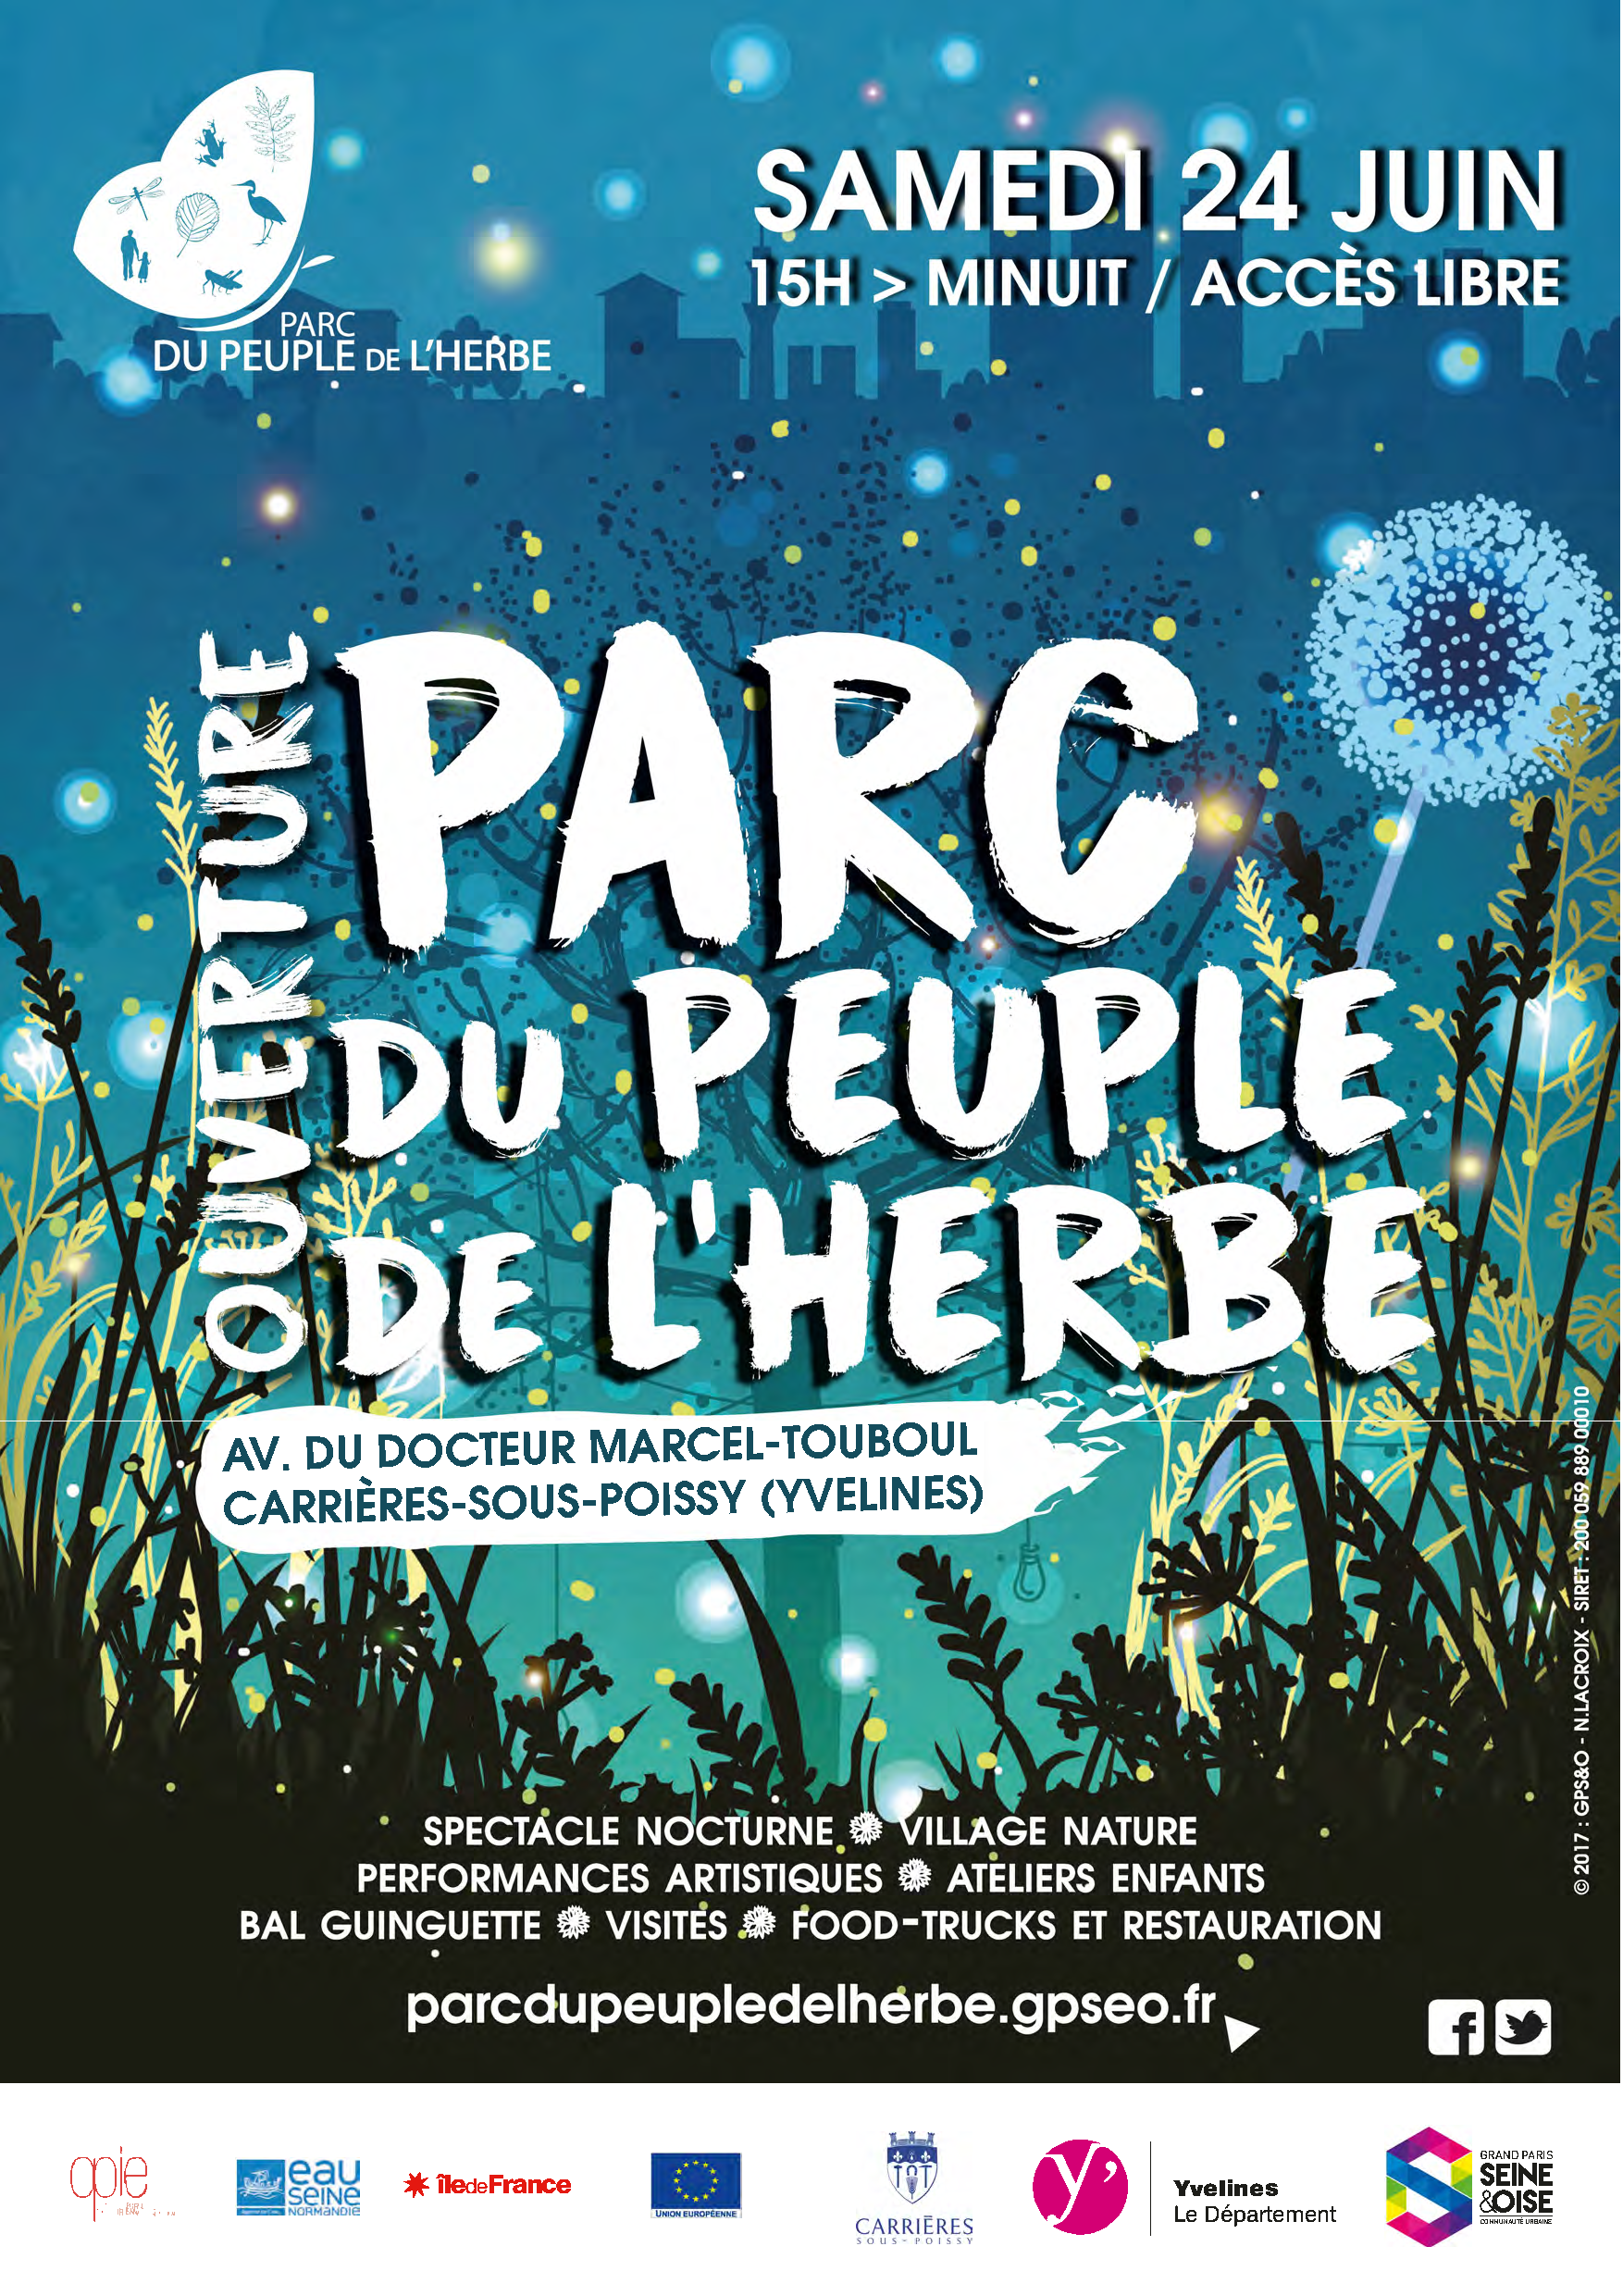 Inauguration du parc du peuple de l'herbe 24 juin | France Nature Environnement